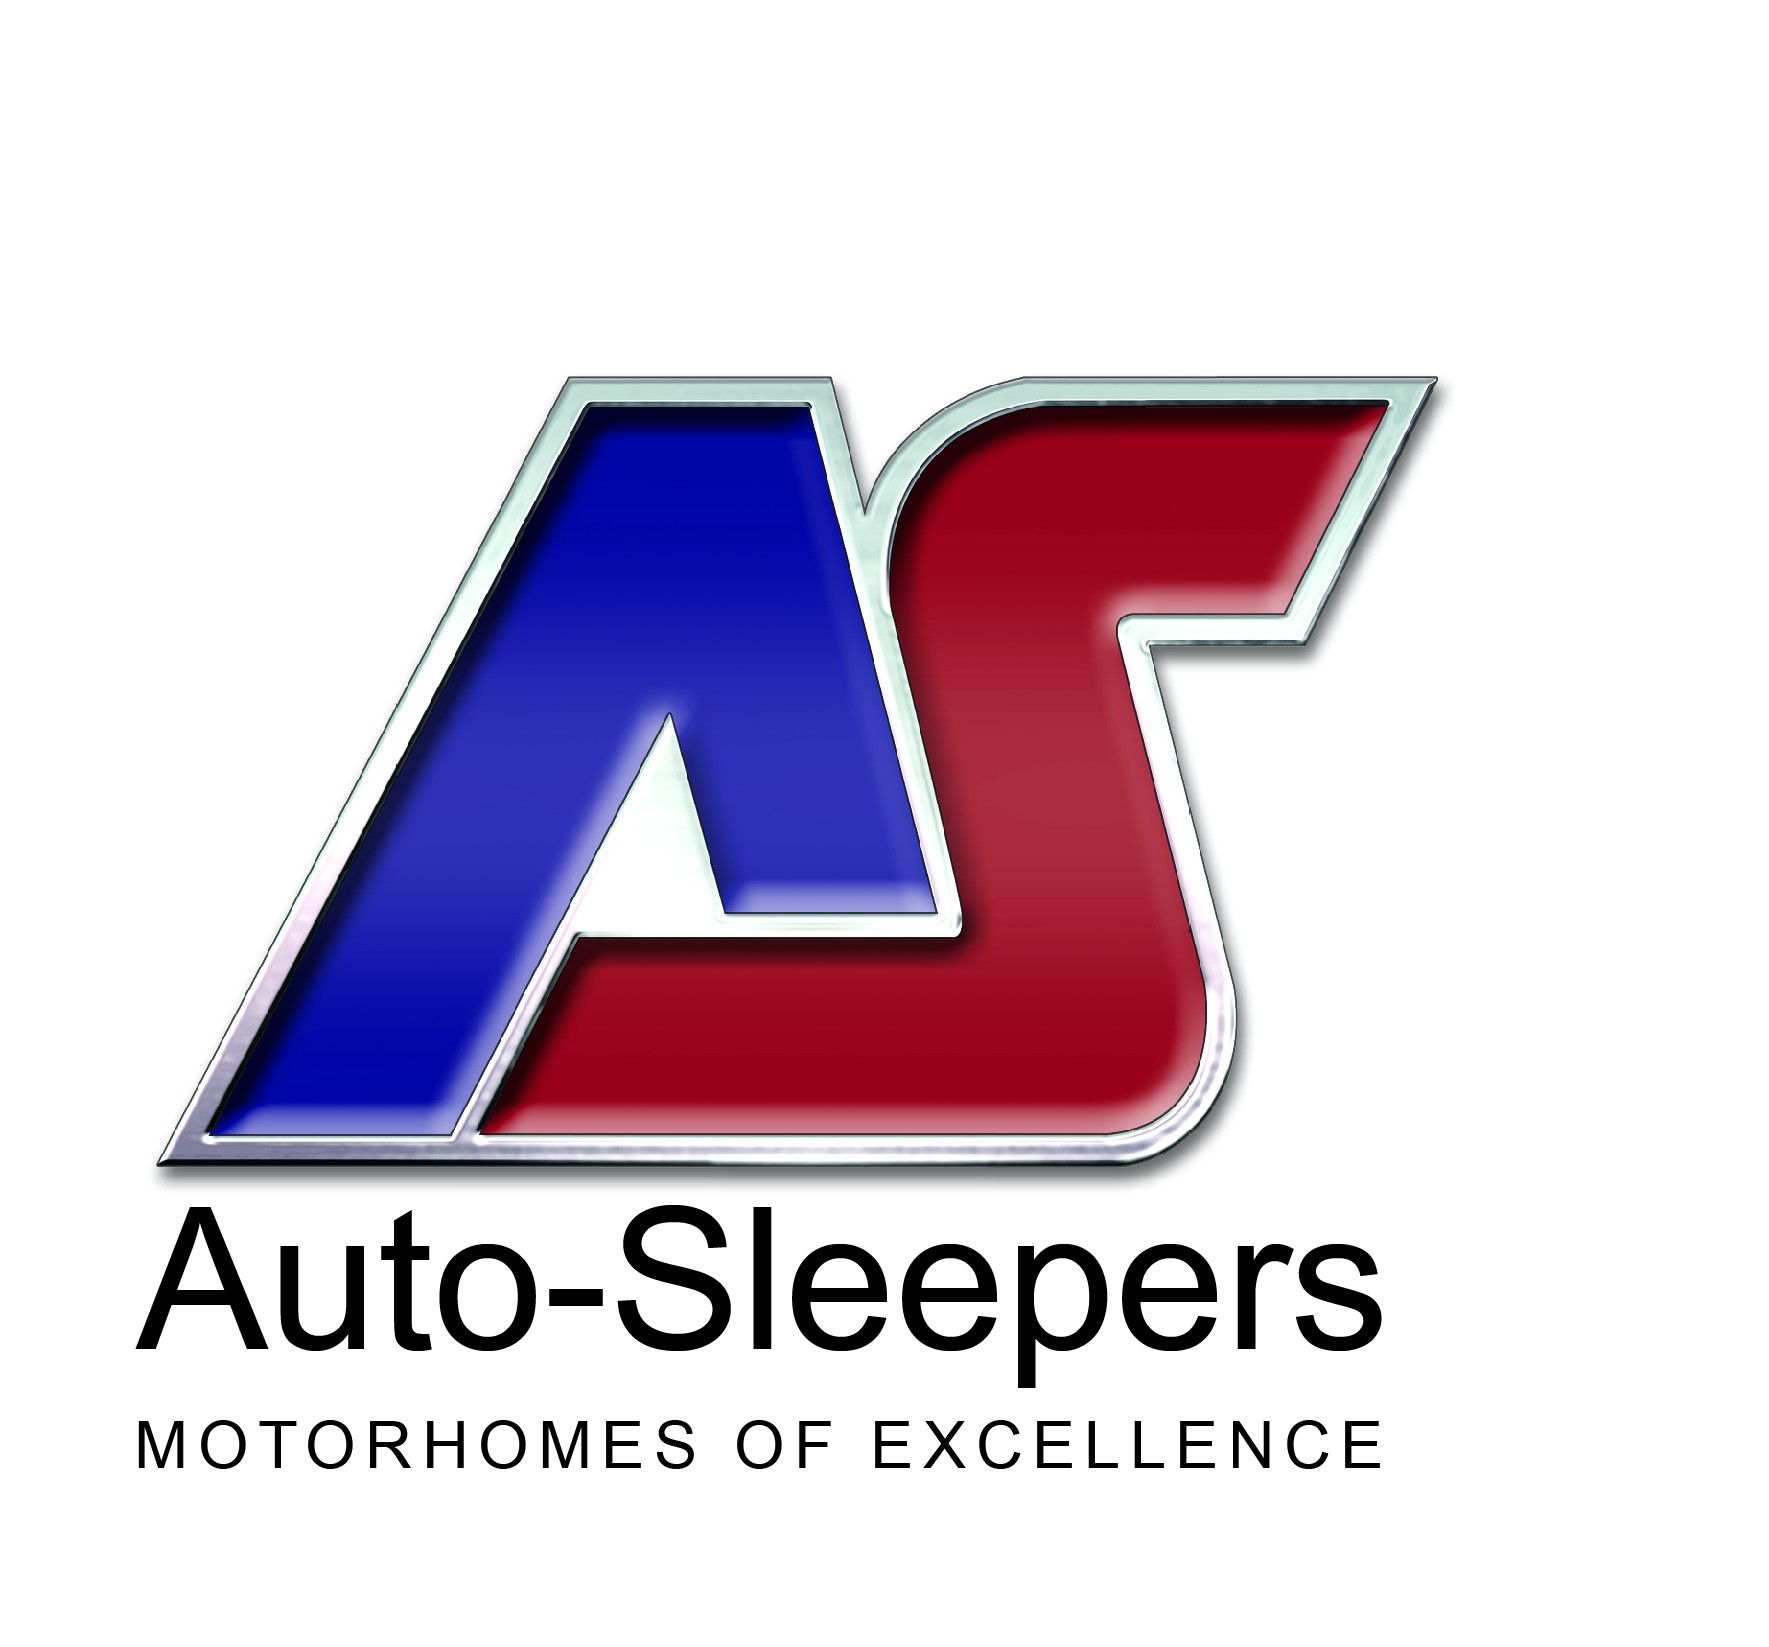 Auto Sleepers